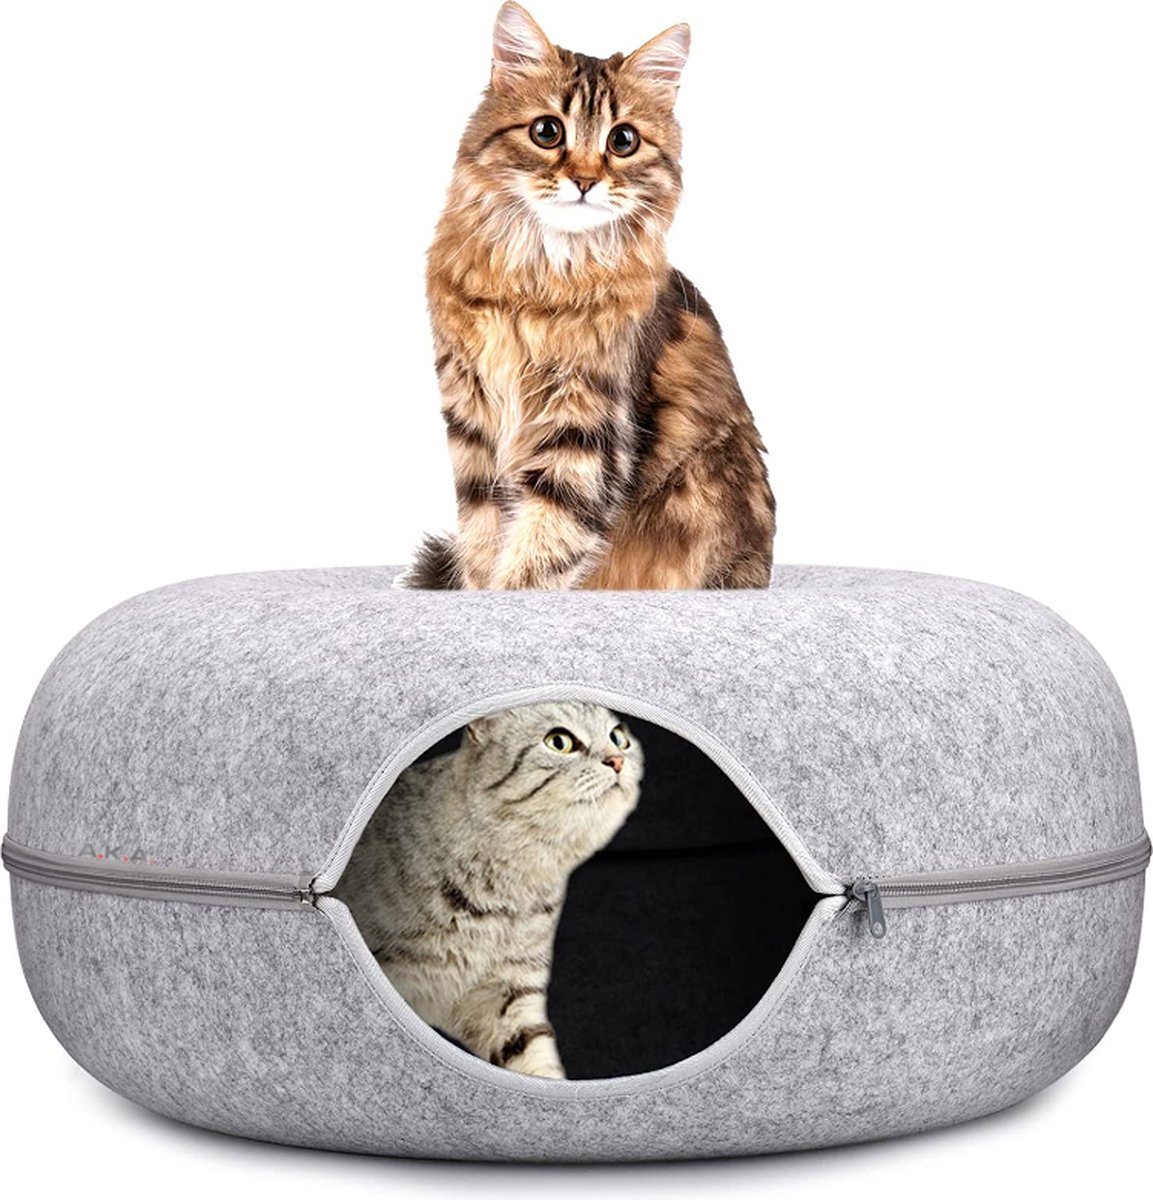 Omhoog gaan beproeving Leesbaarheid A.K.A. Kattentunnel en kattenmand in-1 – Kattenspeelgoed speeltunnel  kattenhuis – kattenhol rond kattenspeeltjes - cat cave donut - grijs vilt